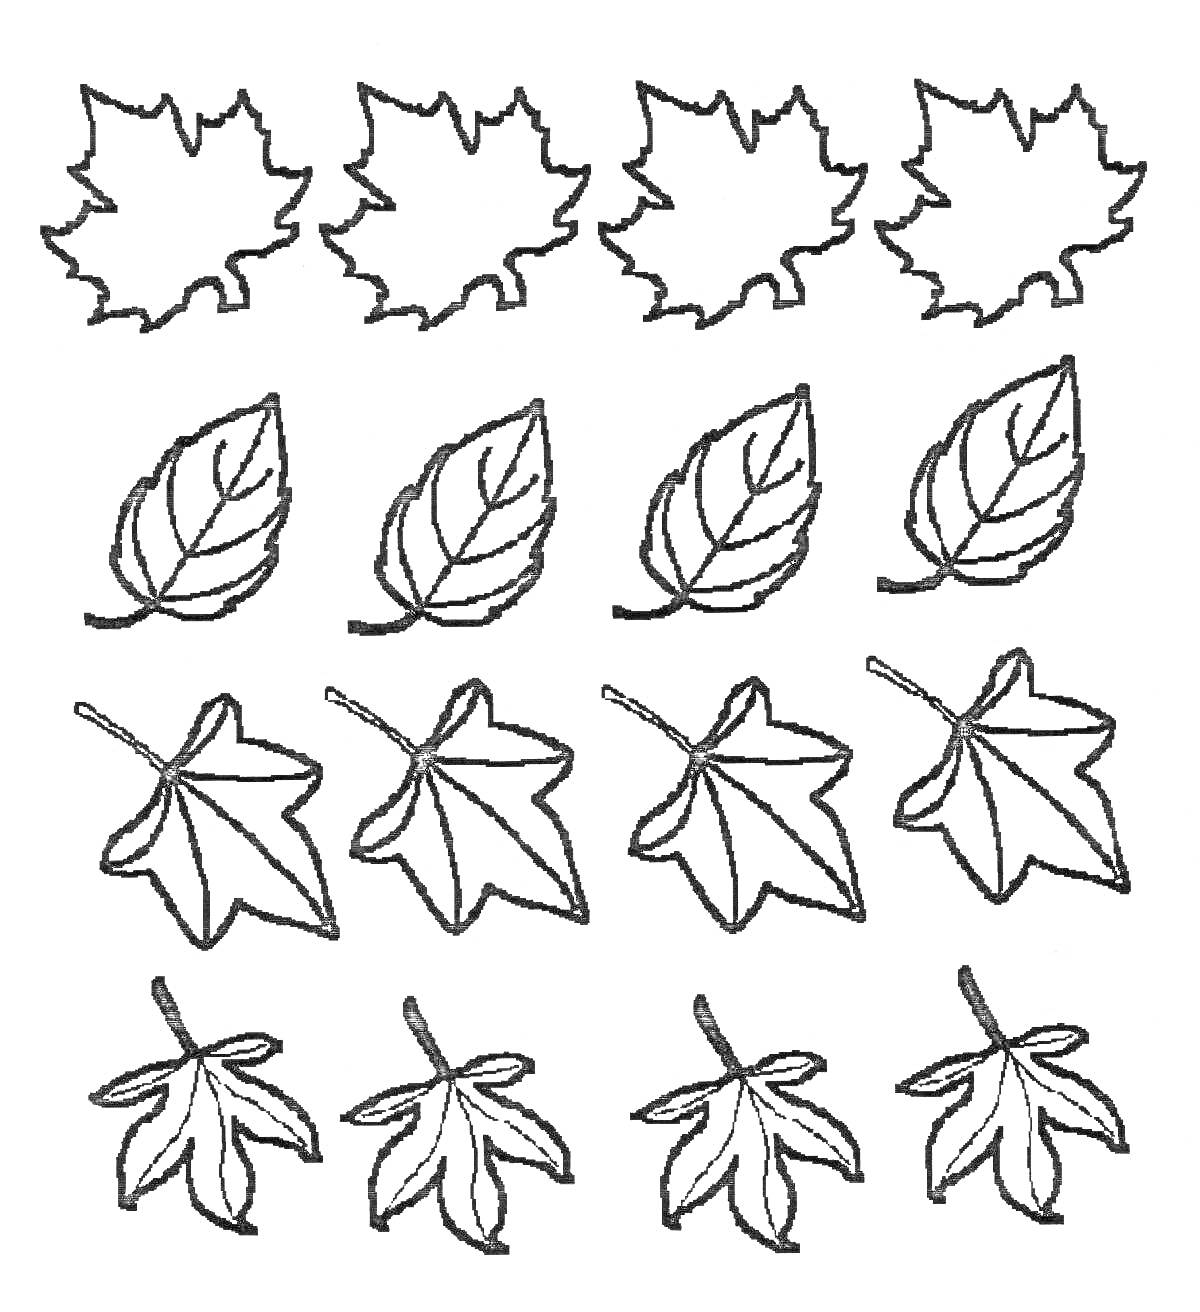 Раскраска Листья разных деревьев: шесть кленовых листьев, четыре овальных листа с прожилками, четыре пятиконечных листа, четыре зубчатых листа.